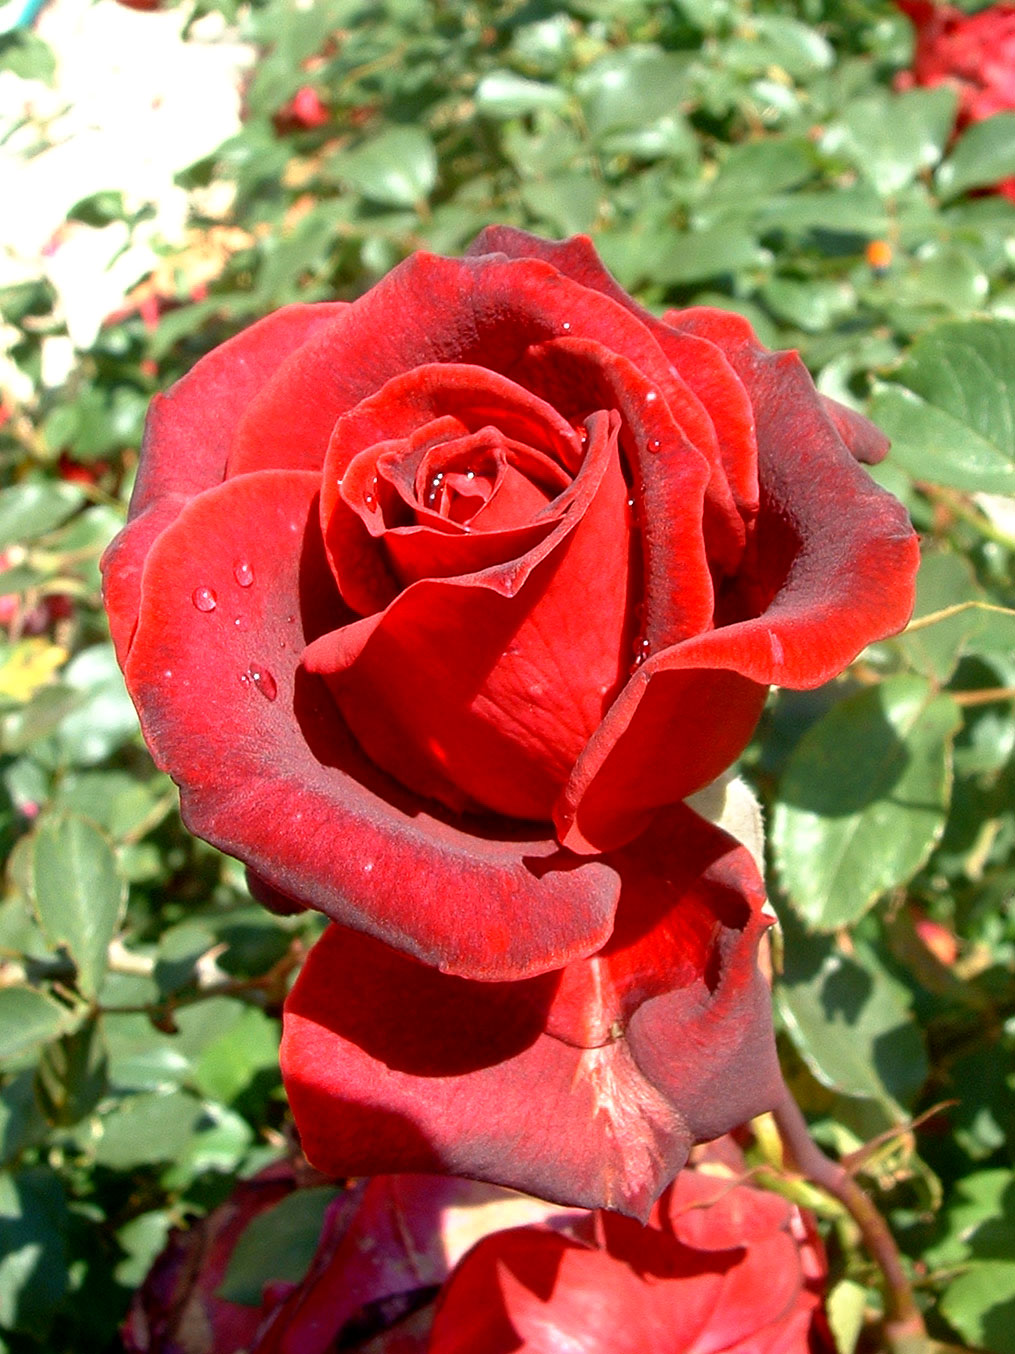 Las rosas rojas - Vida en la tierra